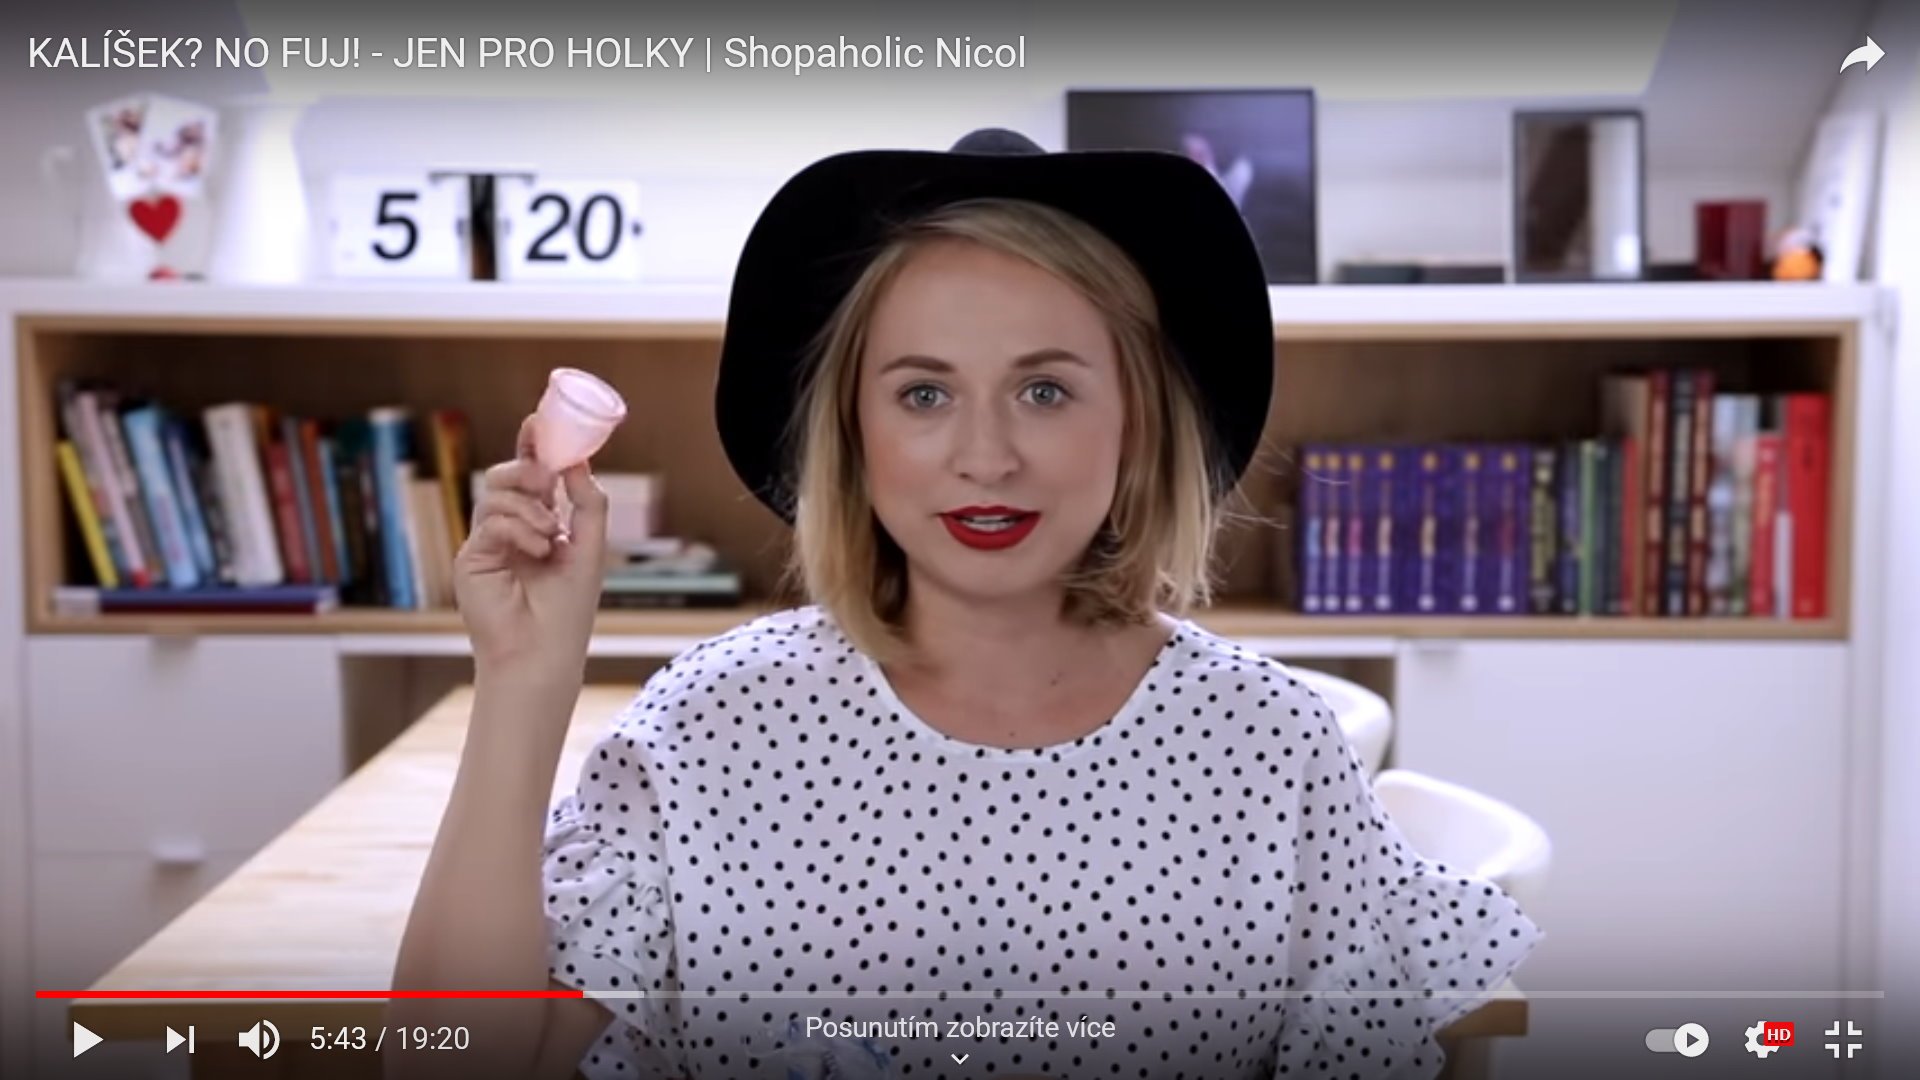 Recenzja wideo kubeczka menstruacyjnego LUNACUP - Shopaholic Nicol